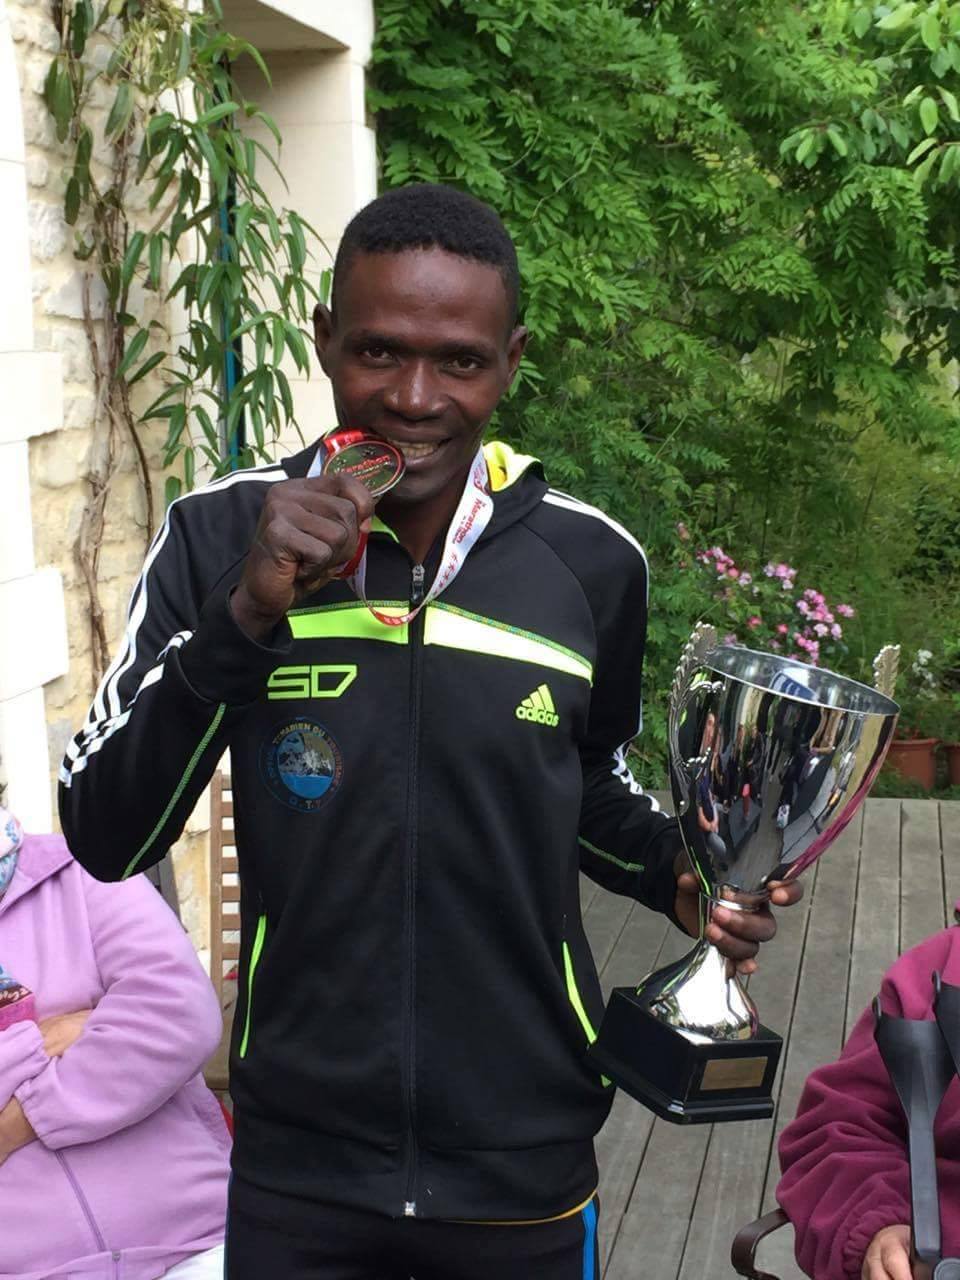 Sport : Bétoudji Valentin remporte une médaille au Marathon “Les Courants de la Liberté” en France